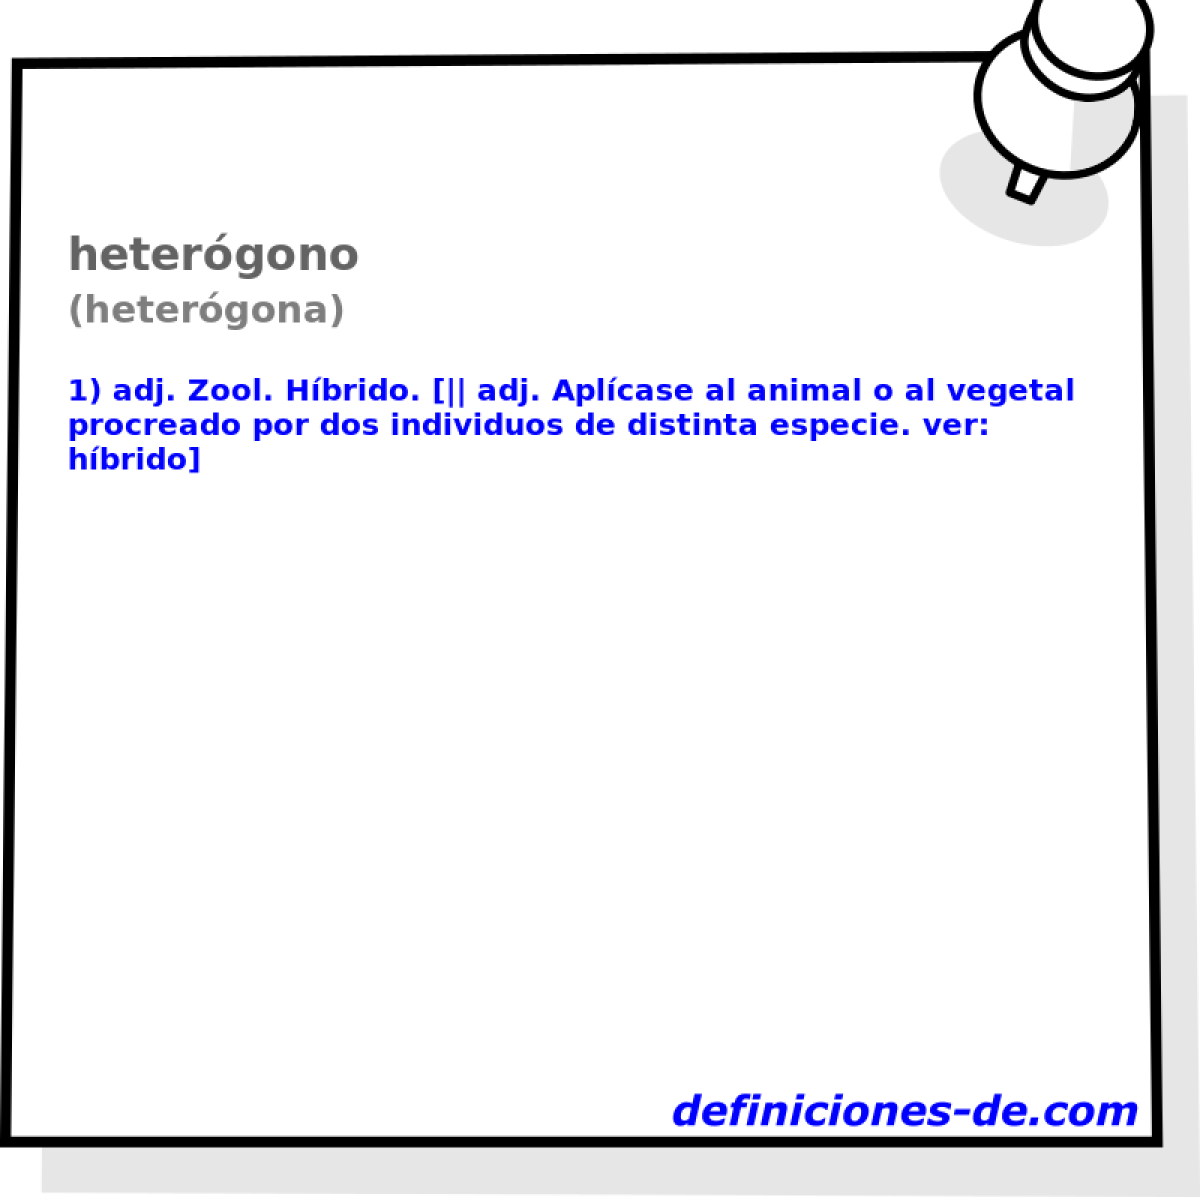 hetergono (hetergona)